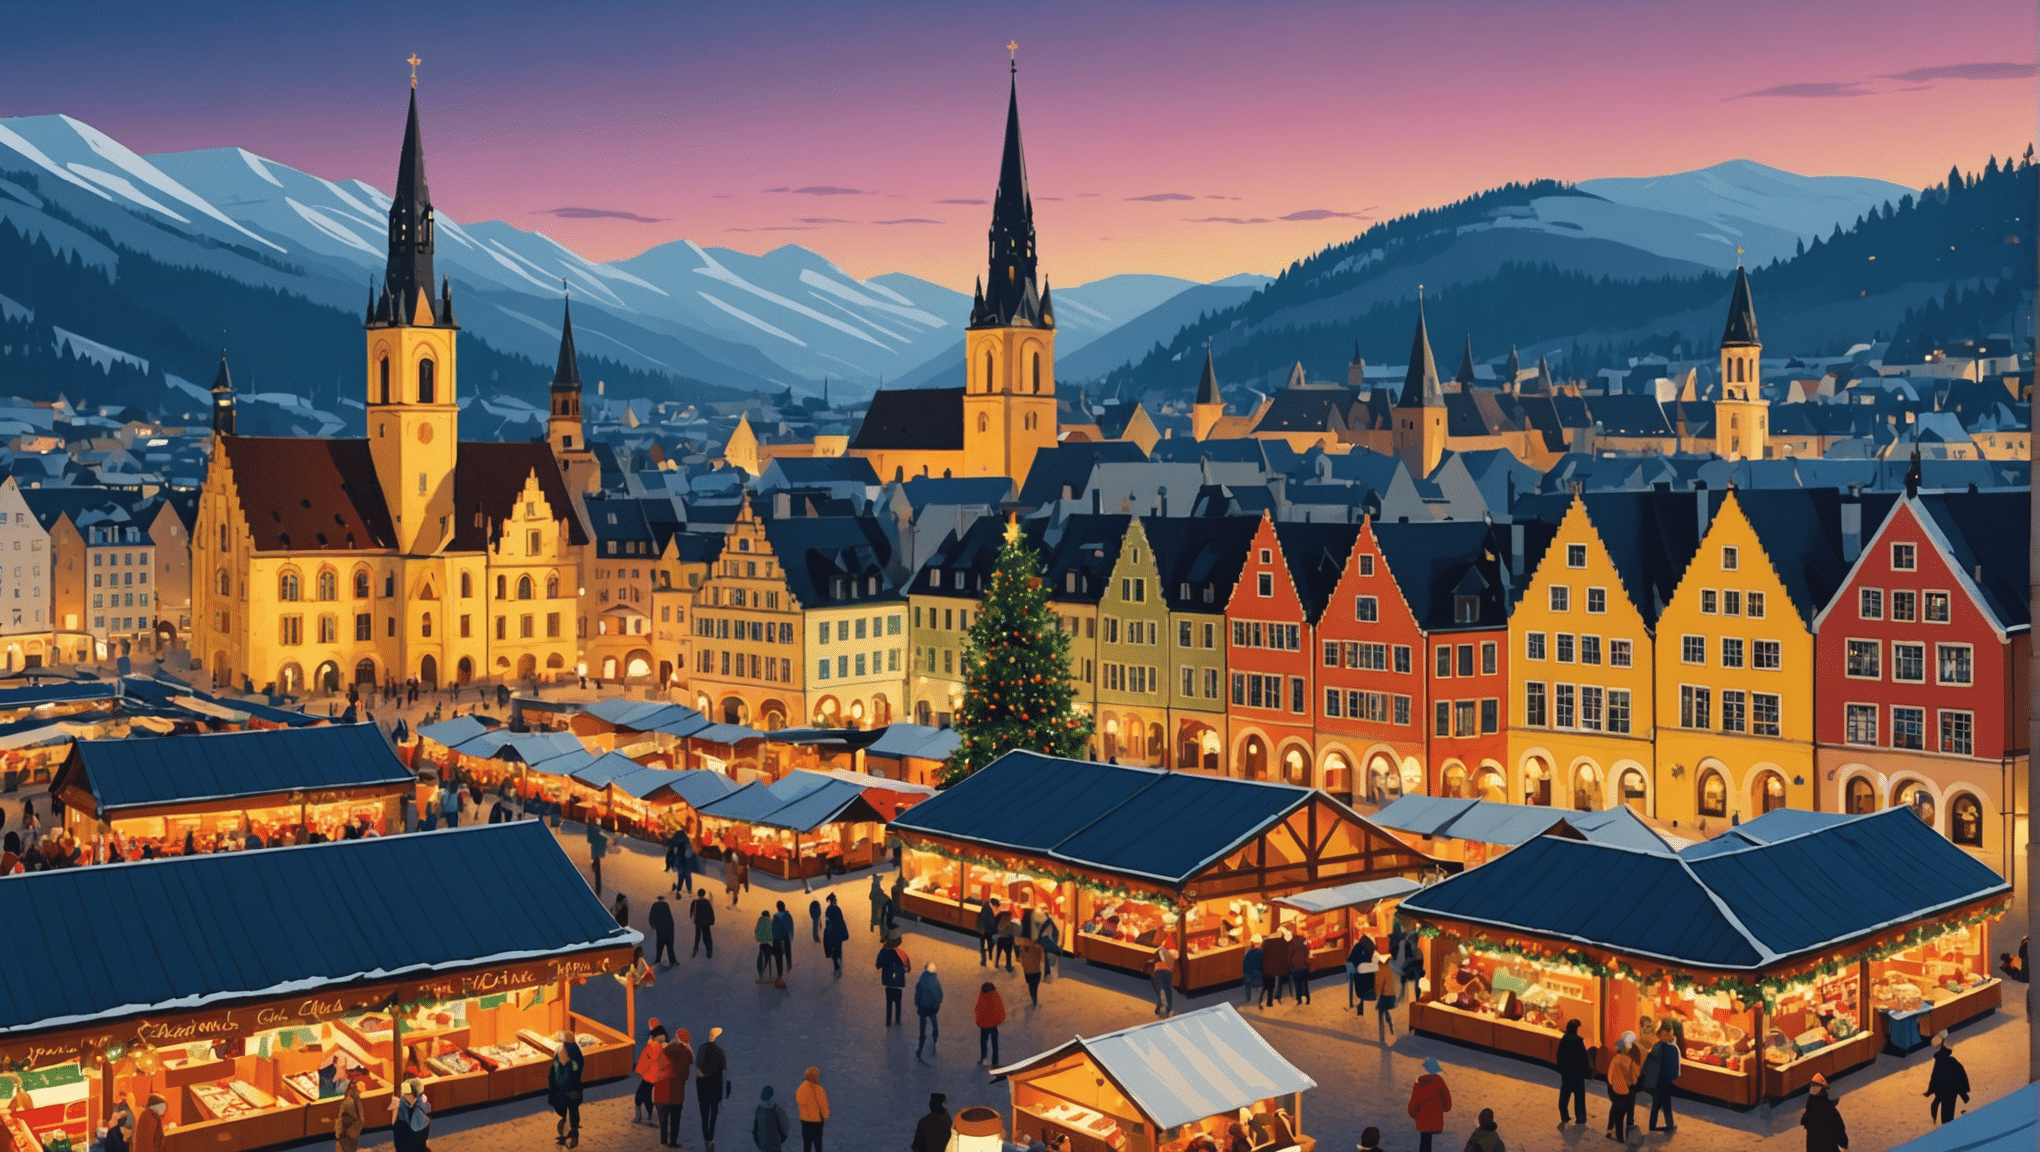 यूरोप में सबसे शानदार क्रिसमस बाजारों की खोज करें और इसकी रोशनी, इसके लजीज स्वाद और इसके पारंपरिक शिल्प के साथ इस मौसम के जादू में खुद को डुबो दें।